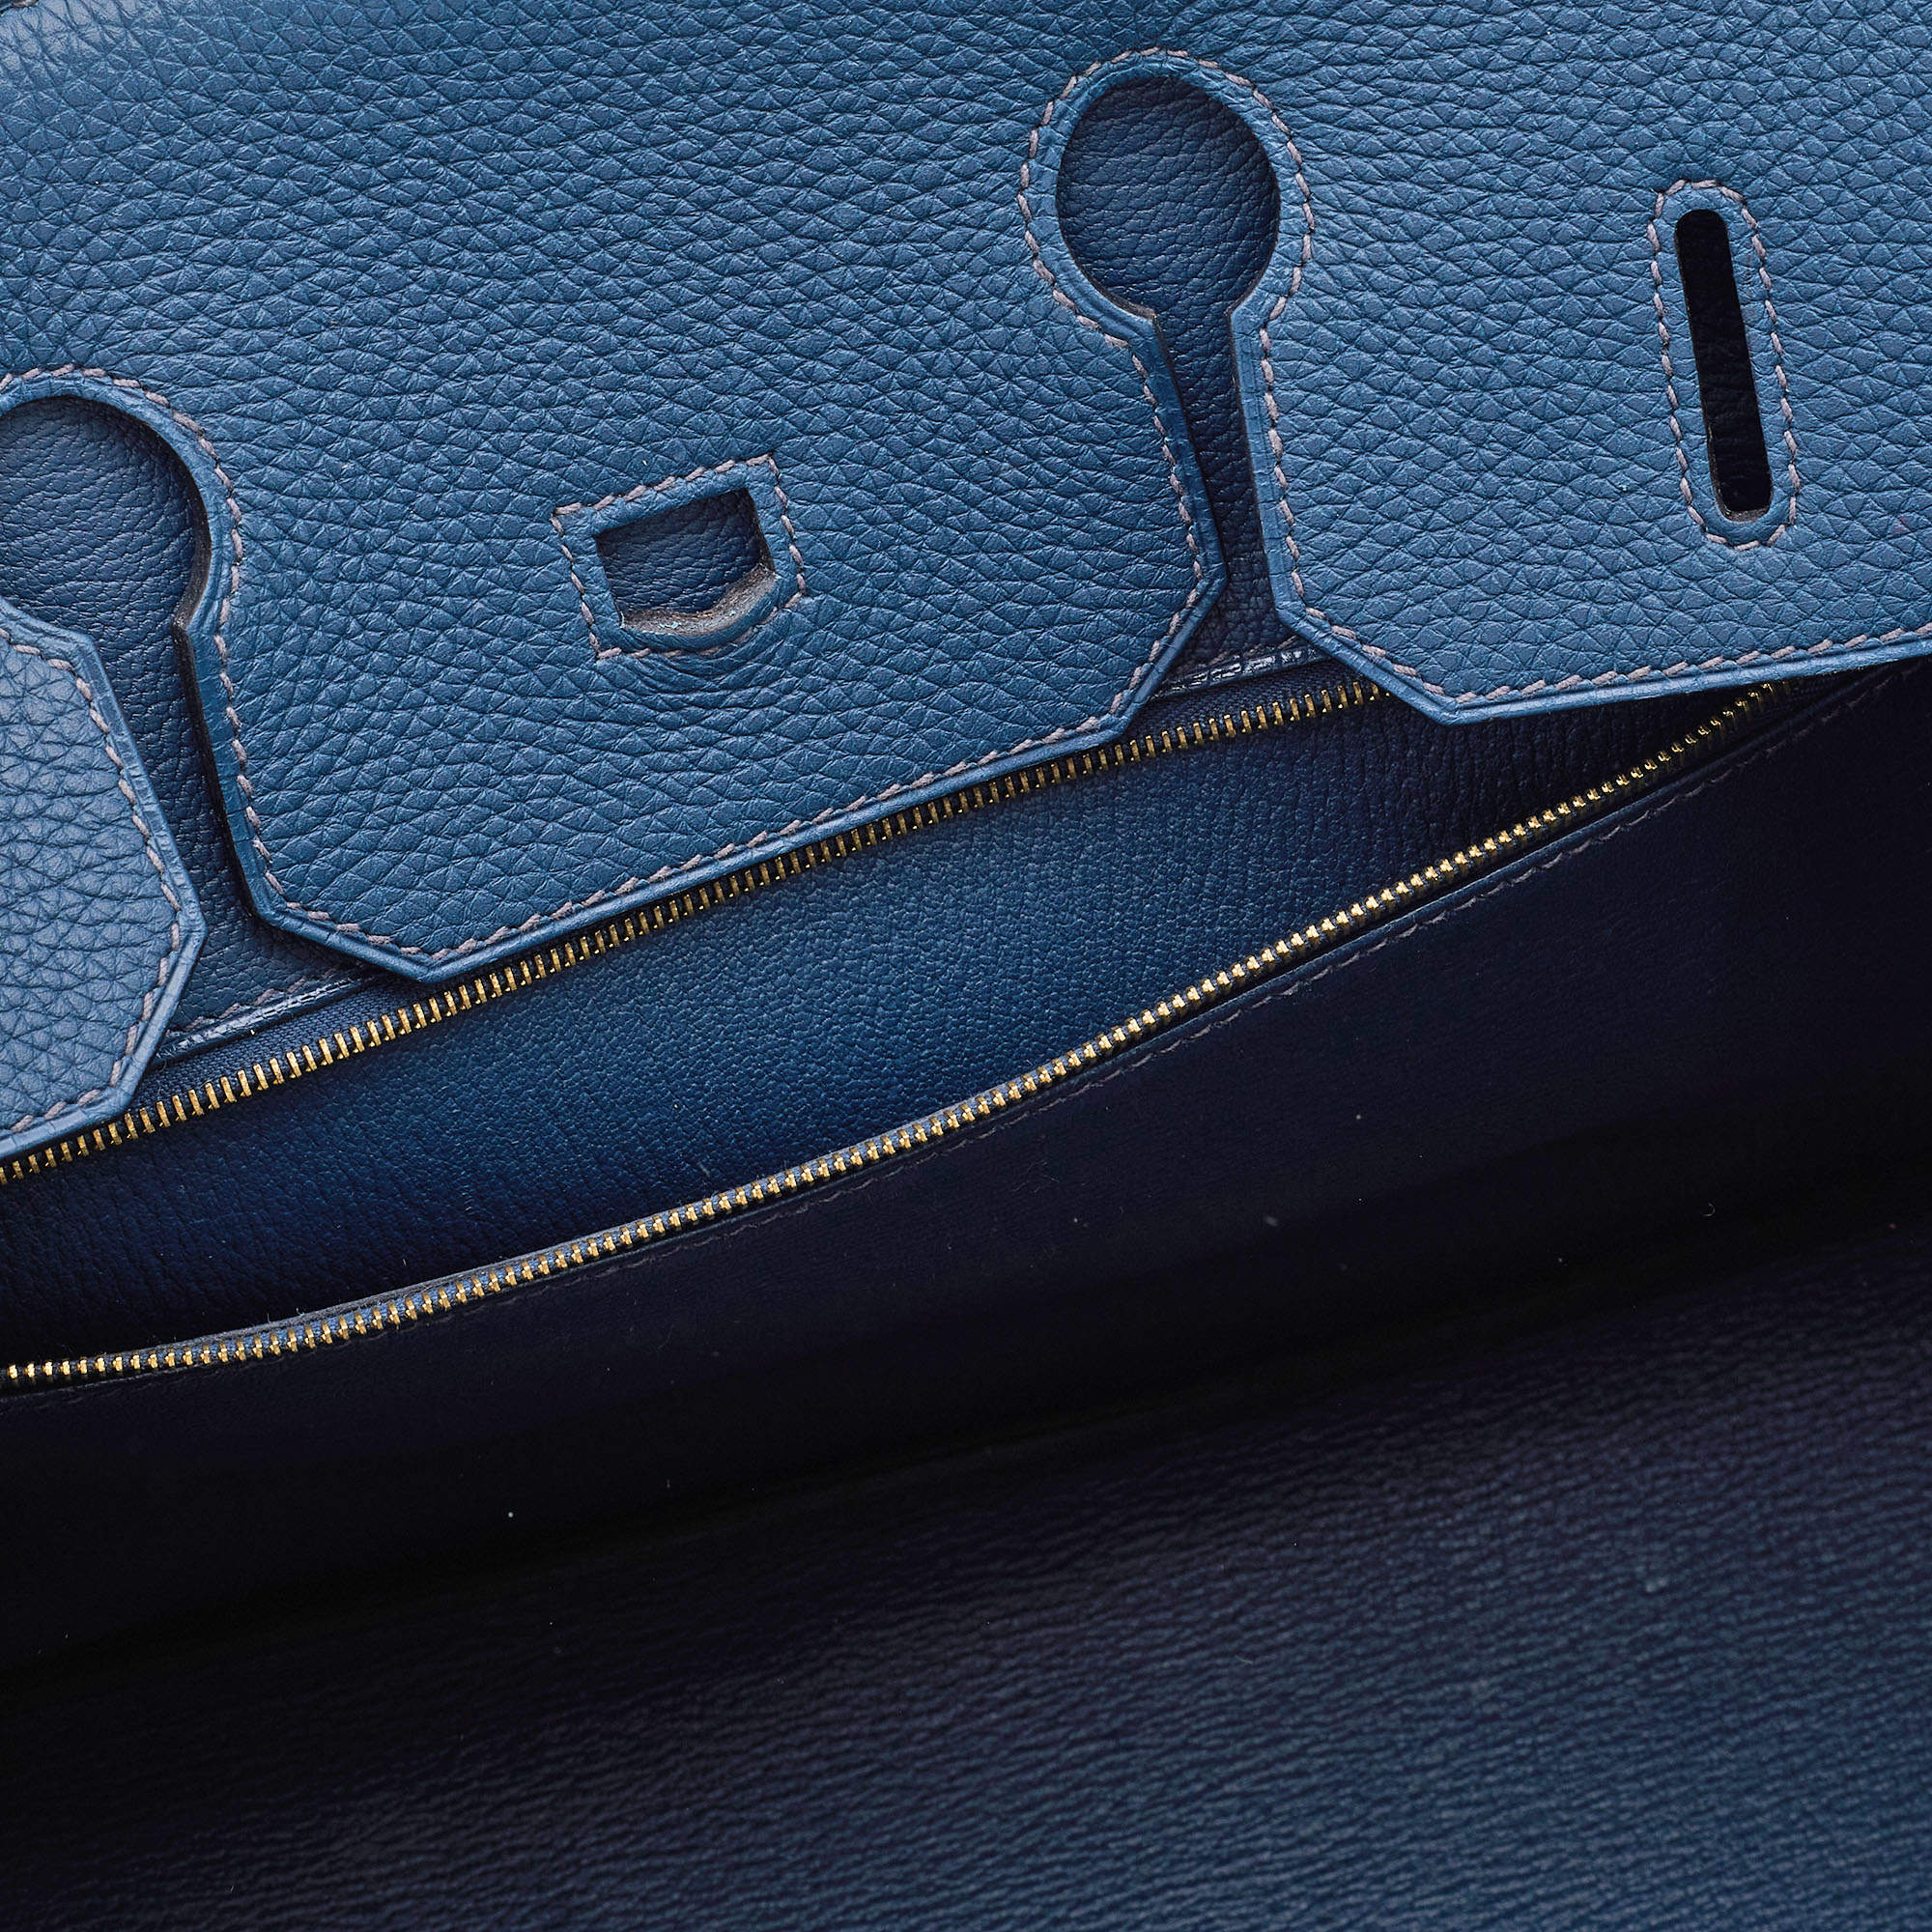 Hermès Bleu De Prusse Togo Leather Gold Plated Birkin 35 Bag Hermes